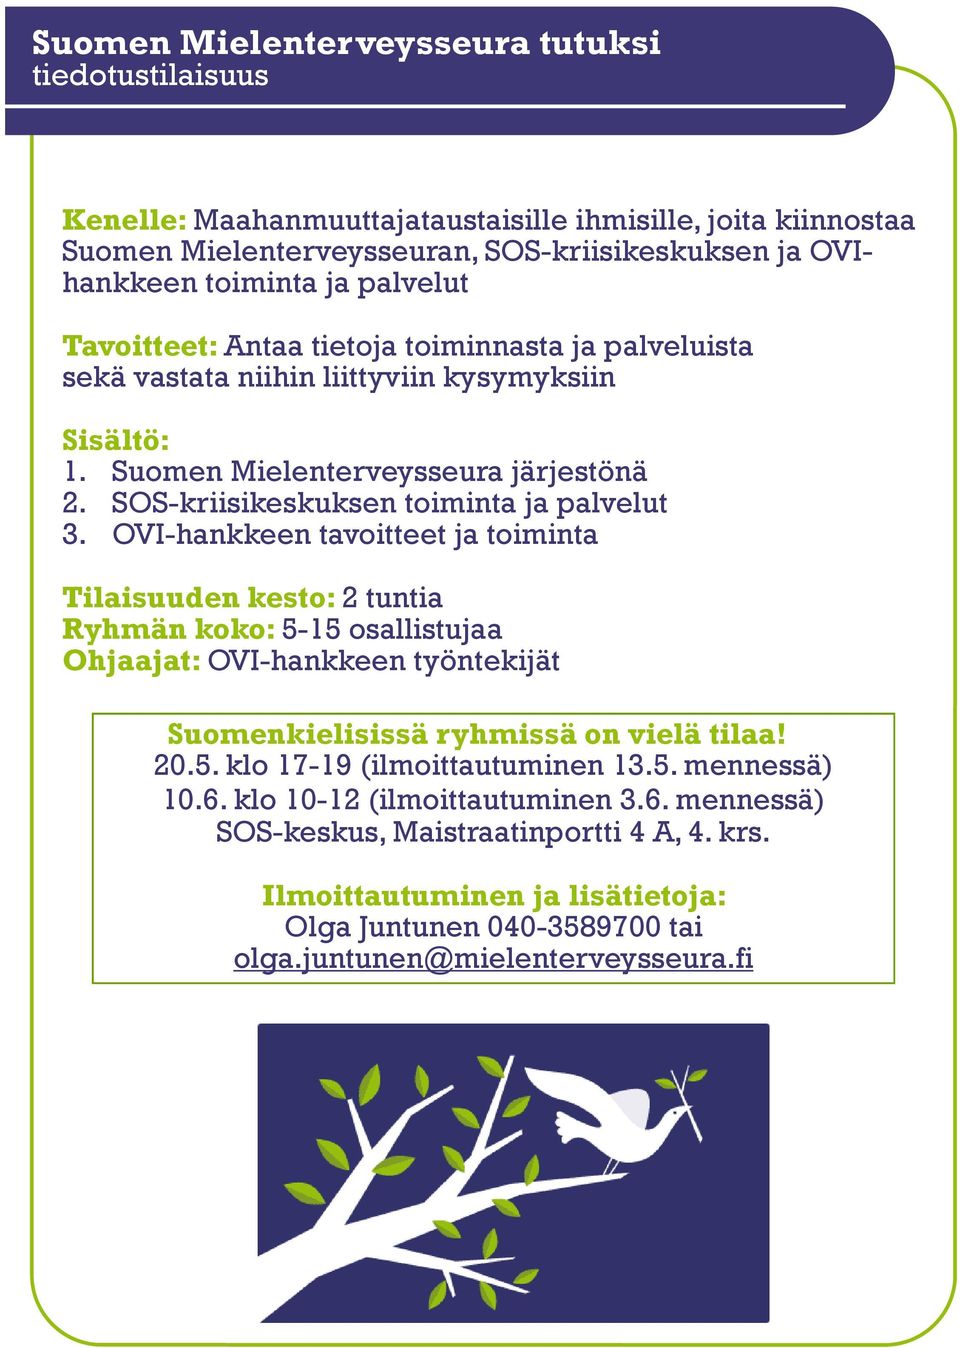 SOS-kriisikeskuksen toiminta ja palvelut 3. OVI-hankkeen tavoitteet ja toiminta Tilaisuuden kesto: 2 tuntia Suomenkielisissä ryhmissä on vielä tilaa! 20.5.